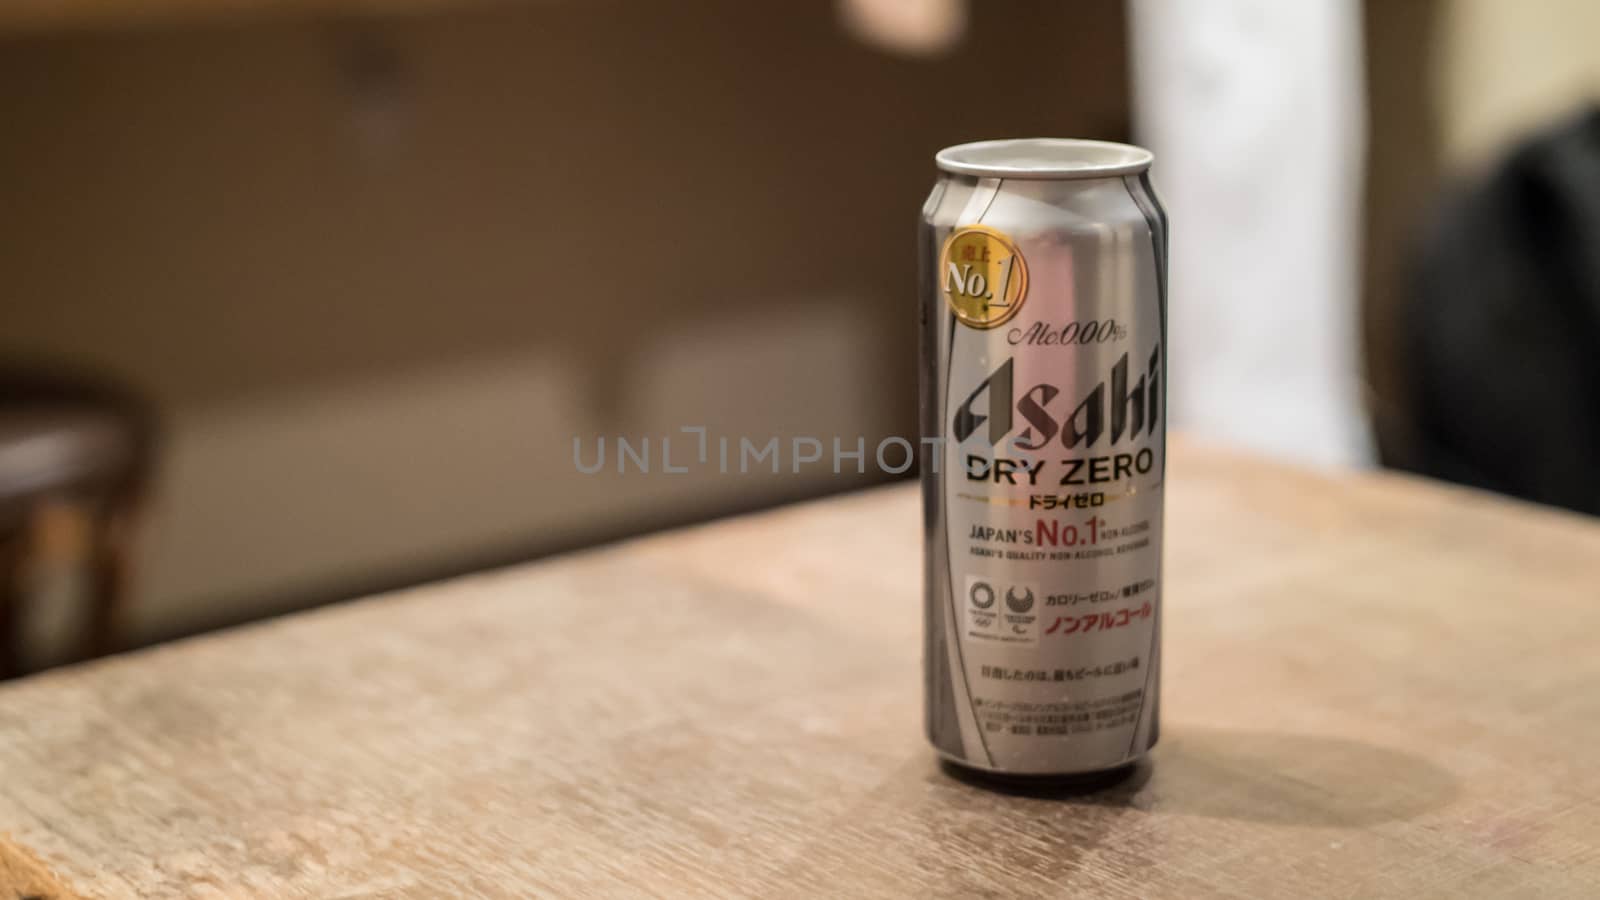 Dry Zero non alcoholic Asahi Beer, Kobe, Japan by ontheroadagain